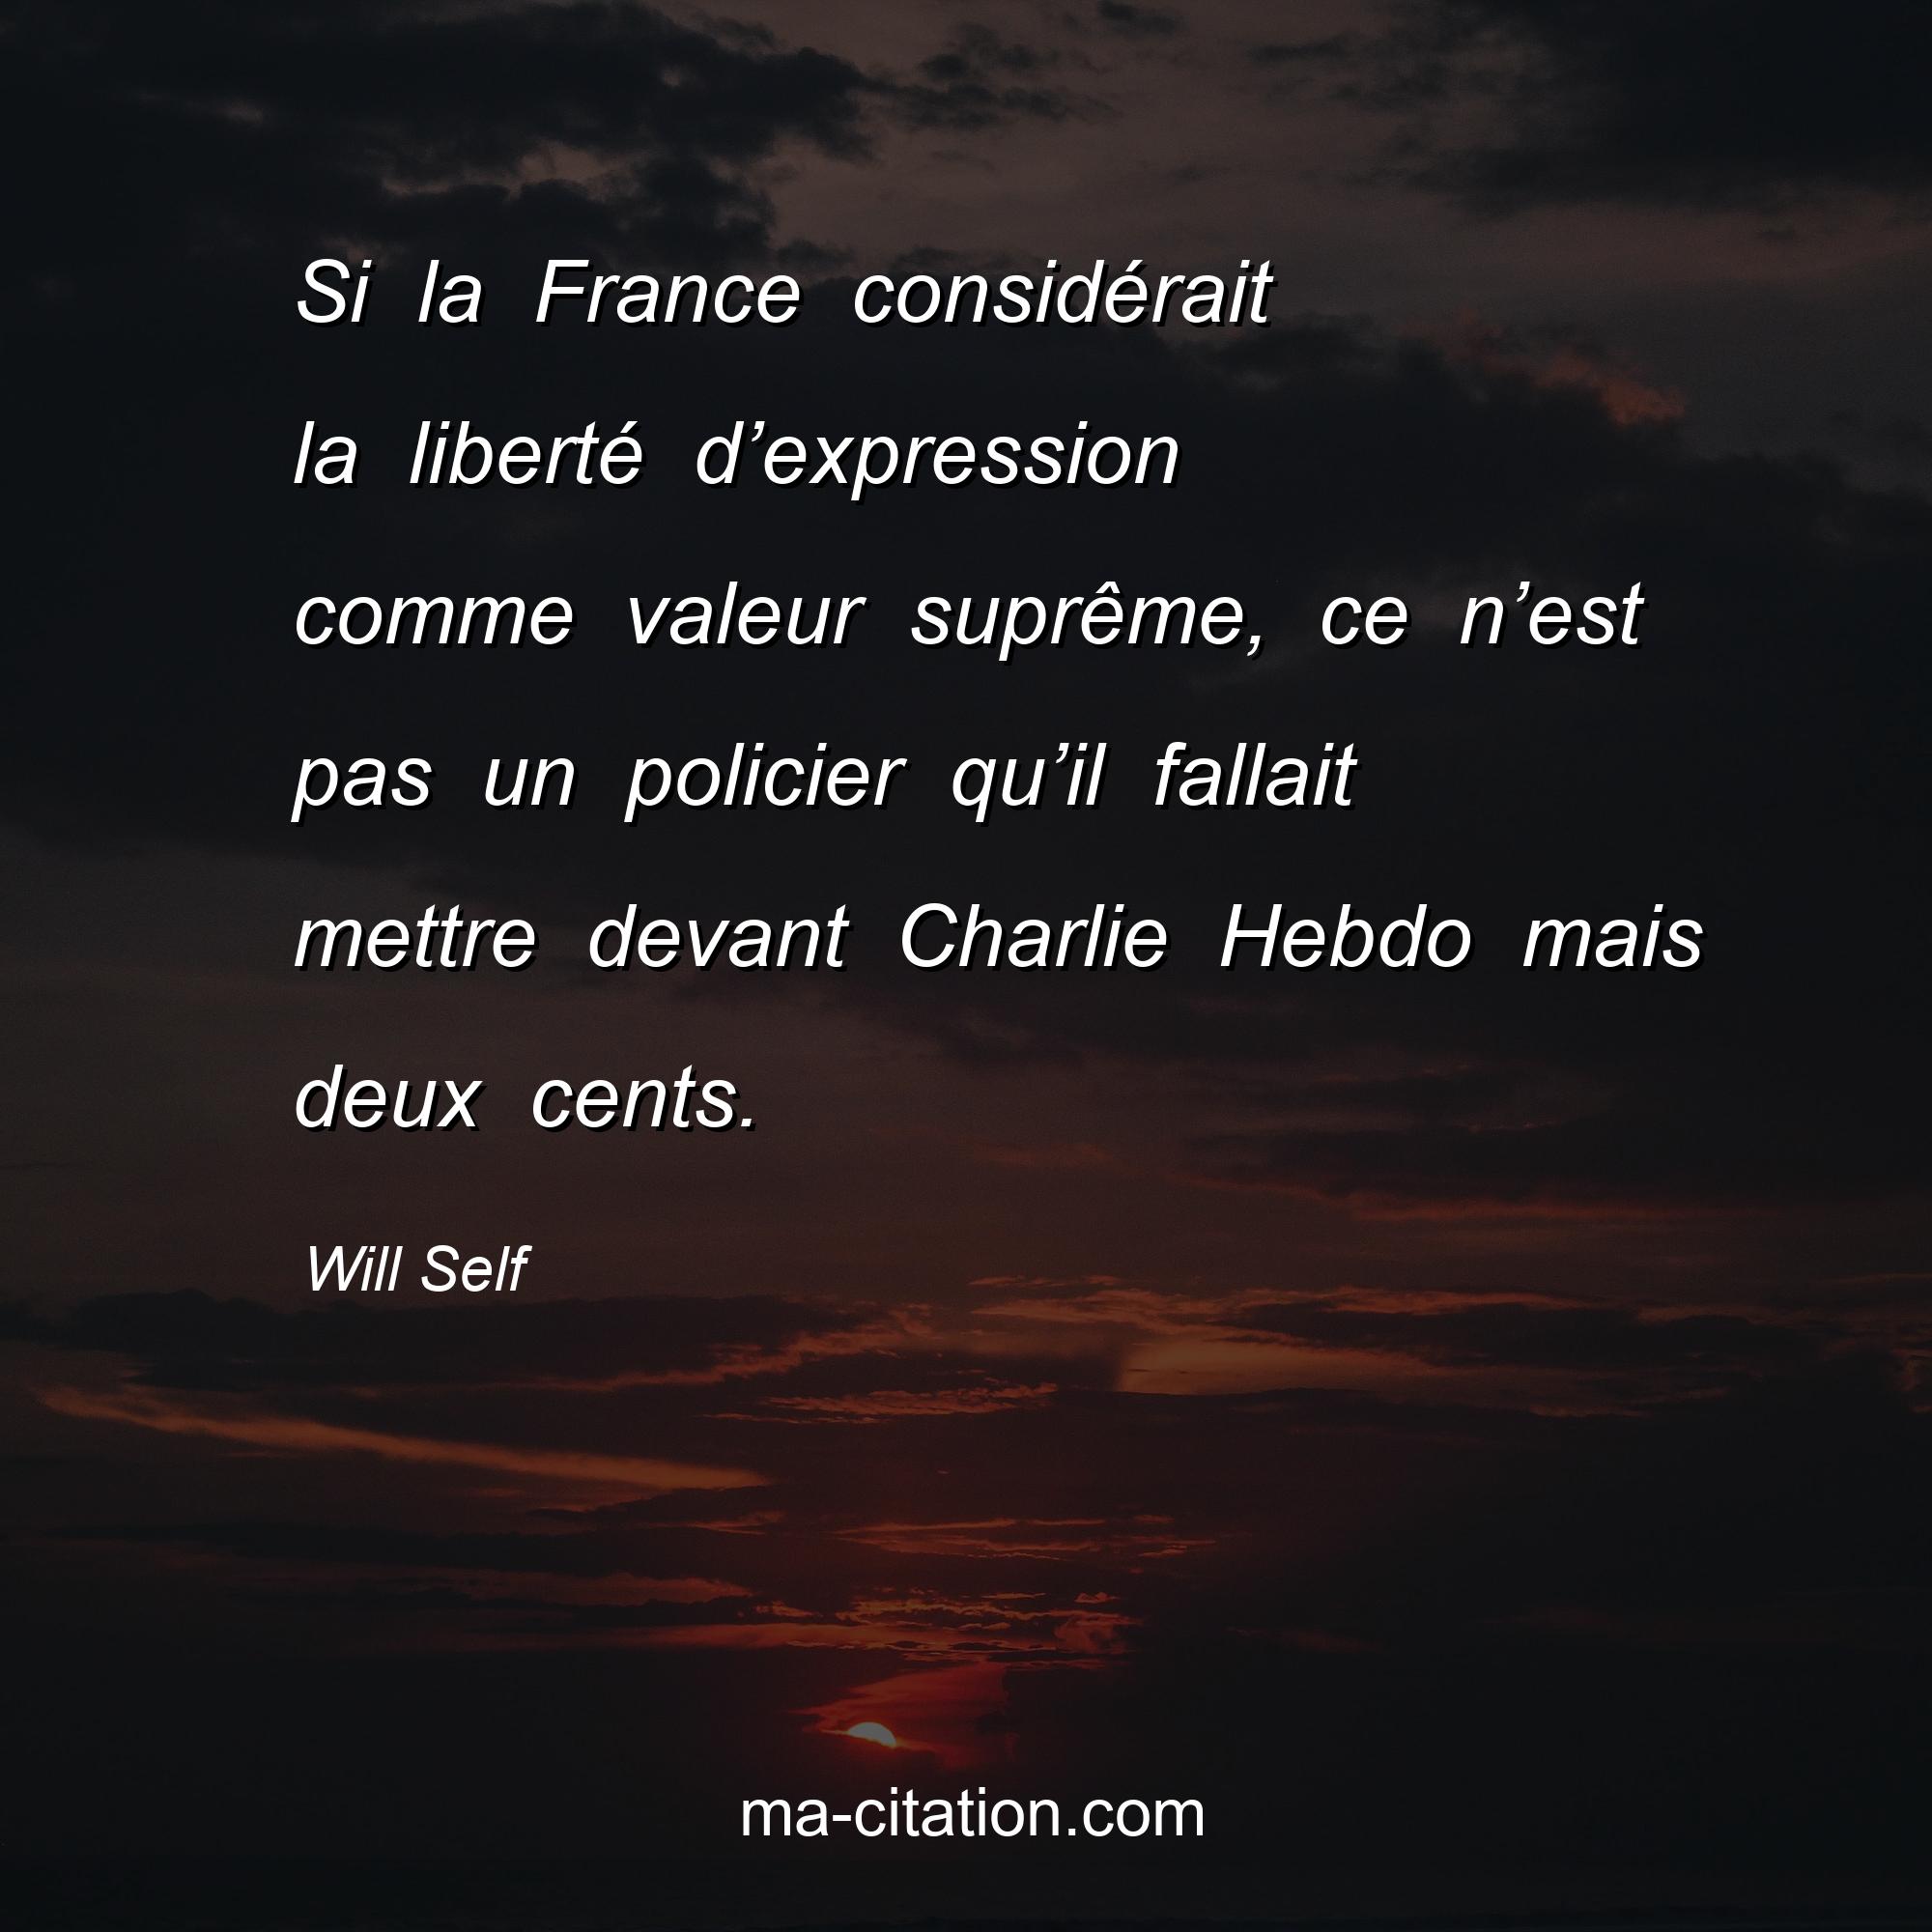 Will Self : Si la France considérait la liberté d’expression comme valeur suprême, ce n’est pas un policier qu’il fallait mettre devant Charlie Hebdo mais deux cents.